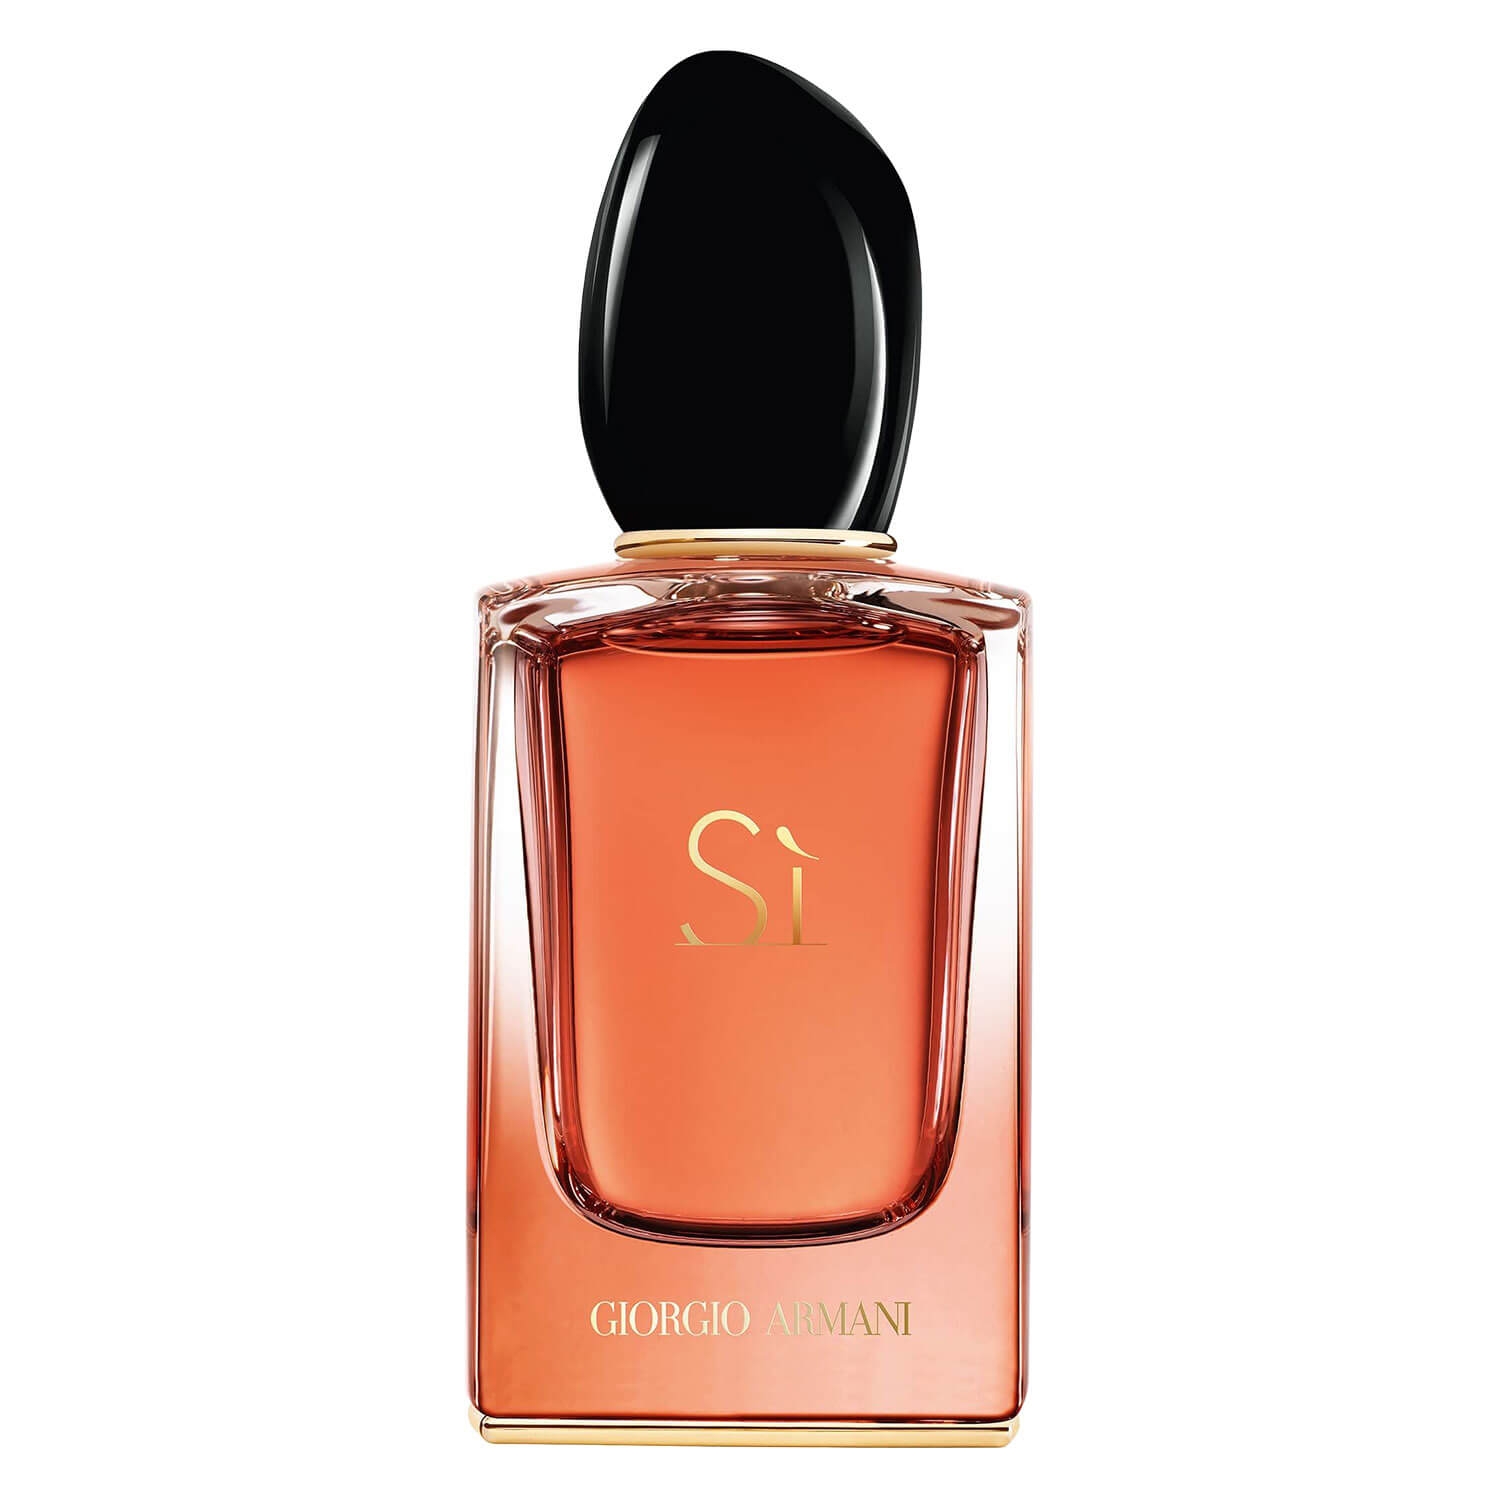 Product image from Sì - Intense Eau de Parfum